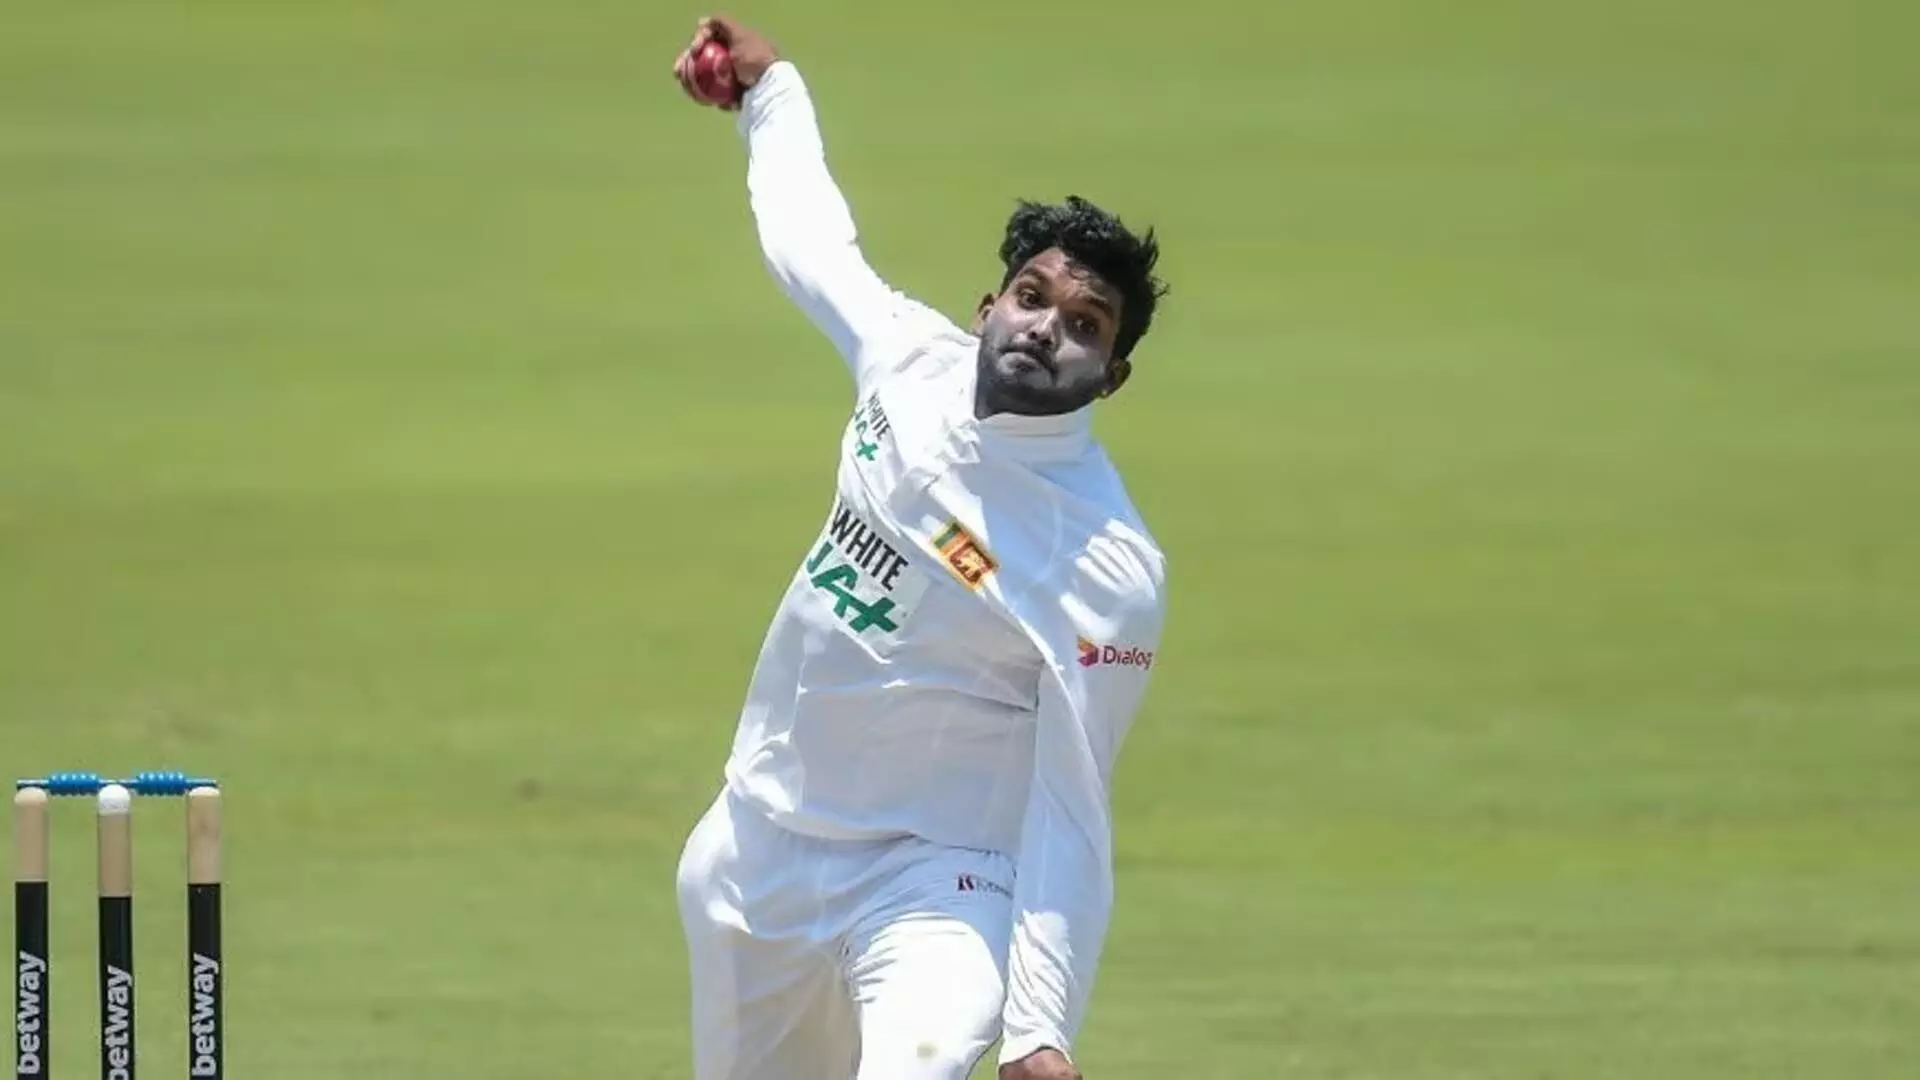 वानिंदु हसरंगा की टेस्ट क्रिकेट में वापसी, बोर्ड द्वारा शोषण की गई खामियों का खुलासा